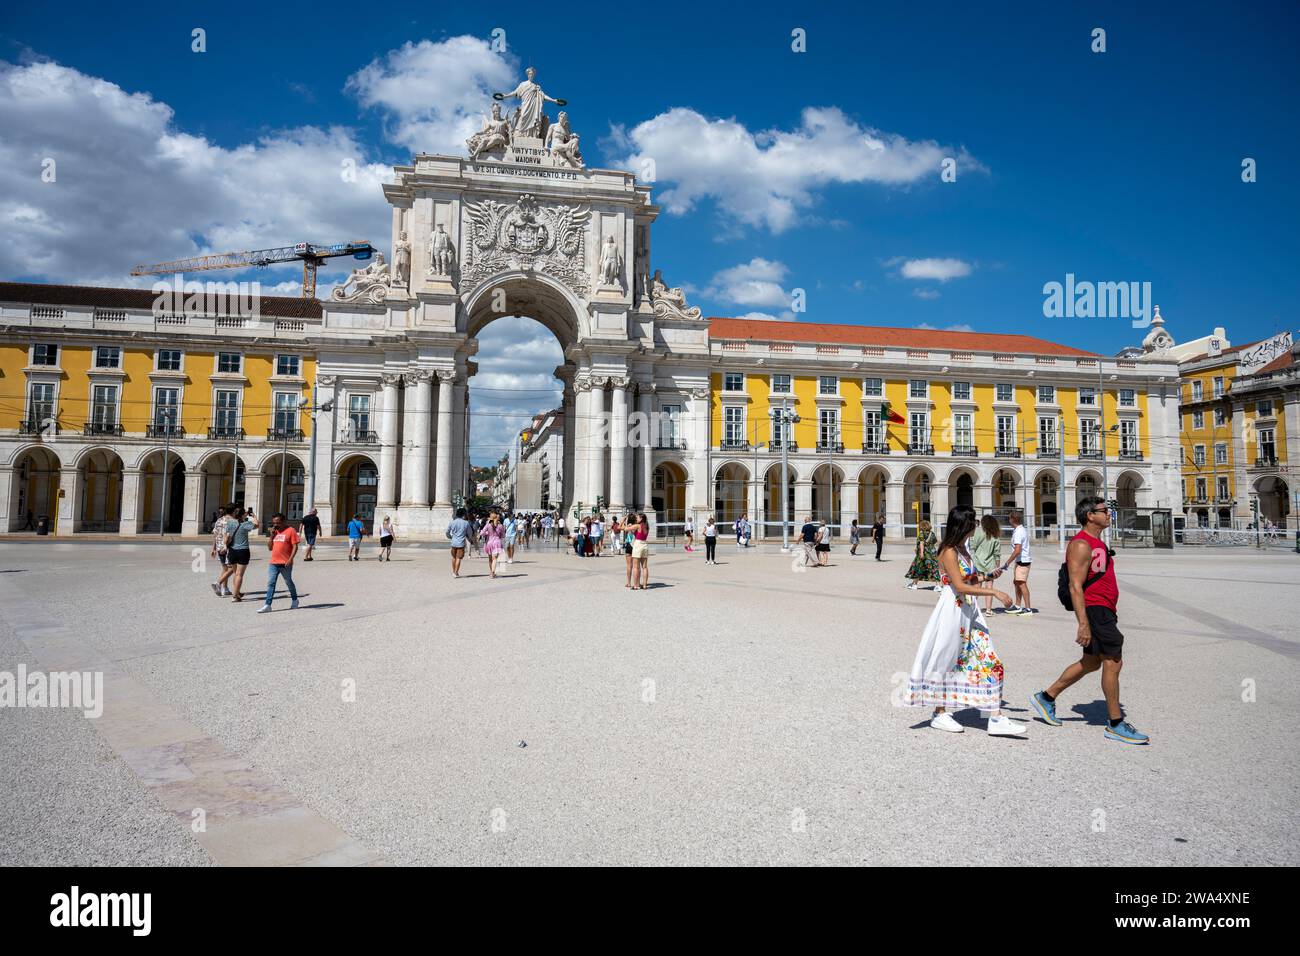 Arco da Rua Augusta à Praca do Comercio (Commerce Plaza), Lisbonne, Portugal la Rua Augusta Arch est un bâtiment historique en pierre, en forme d'arche commémorative Banque D'Images